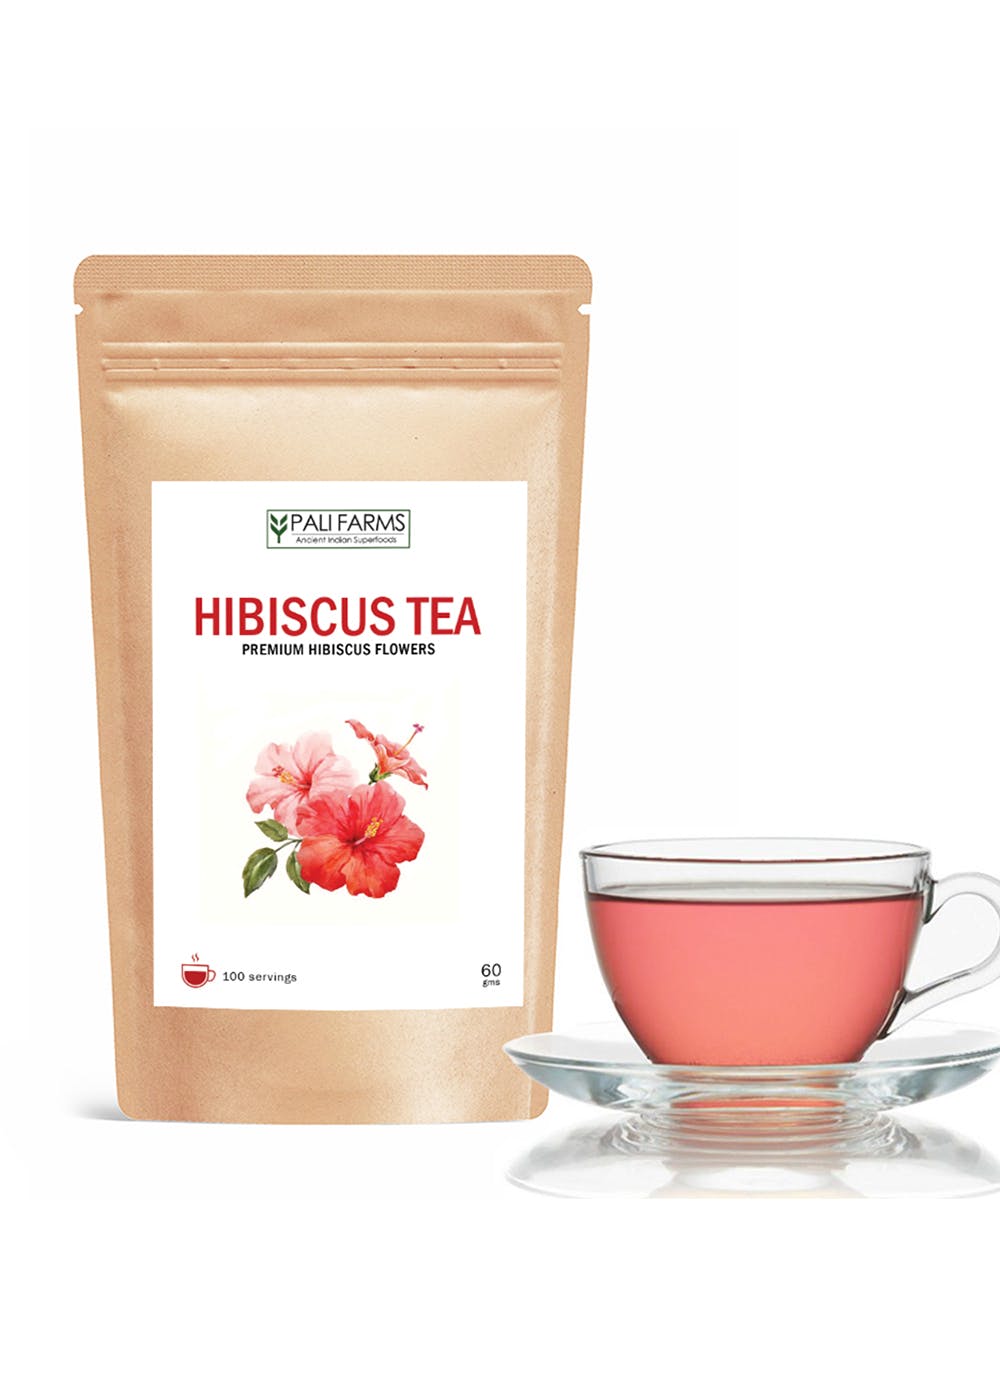 Hibiscus Tea - Premium Hibiscus Flowers - 60 gm